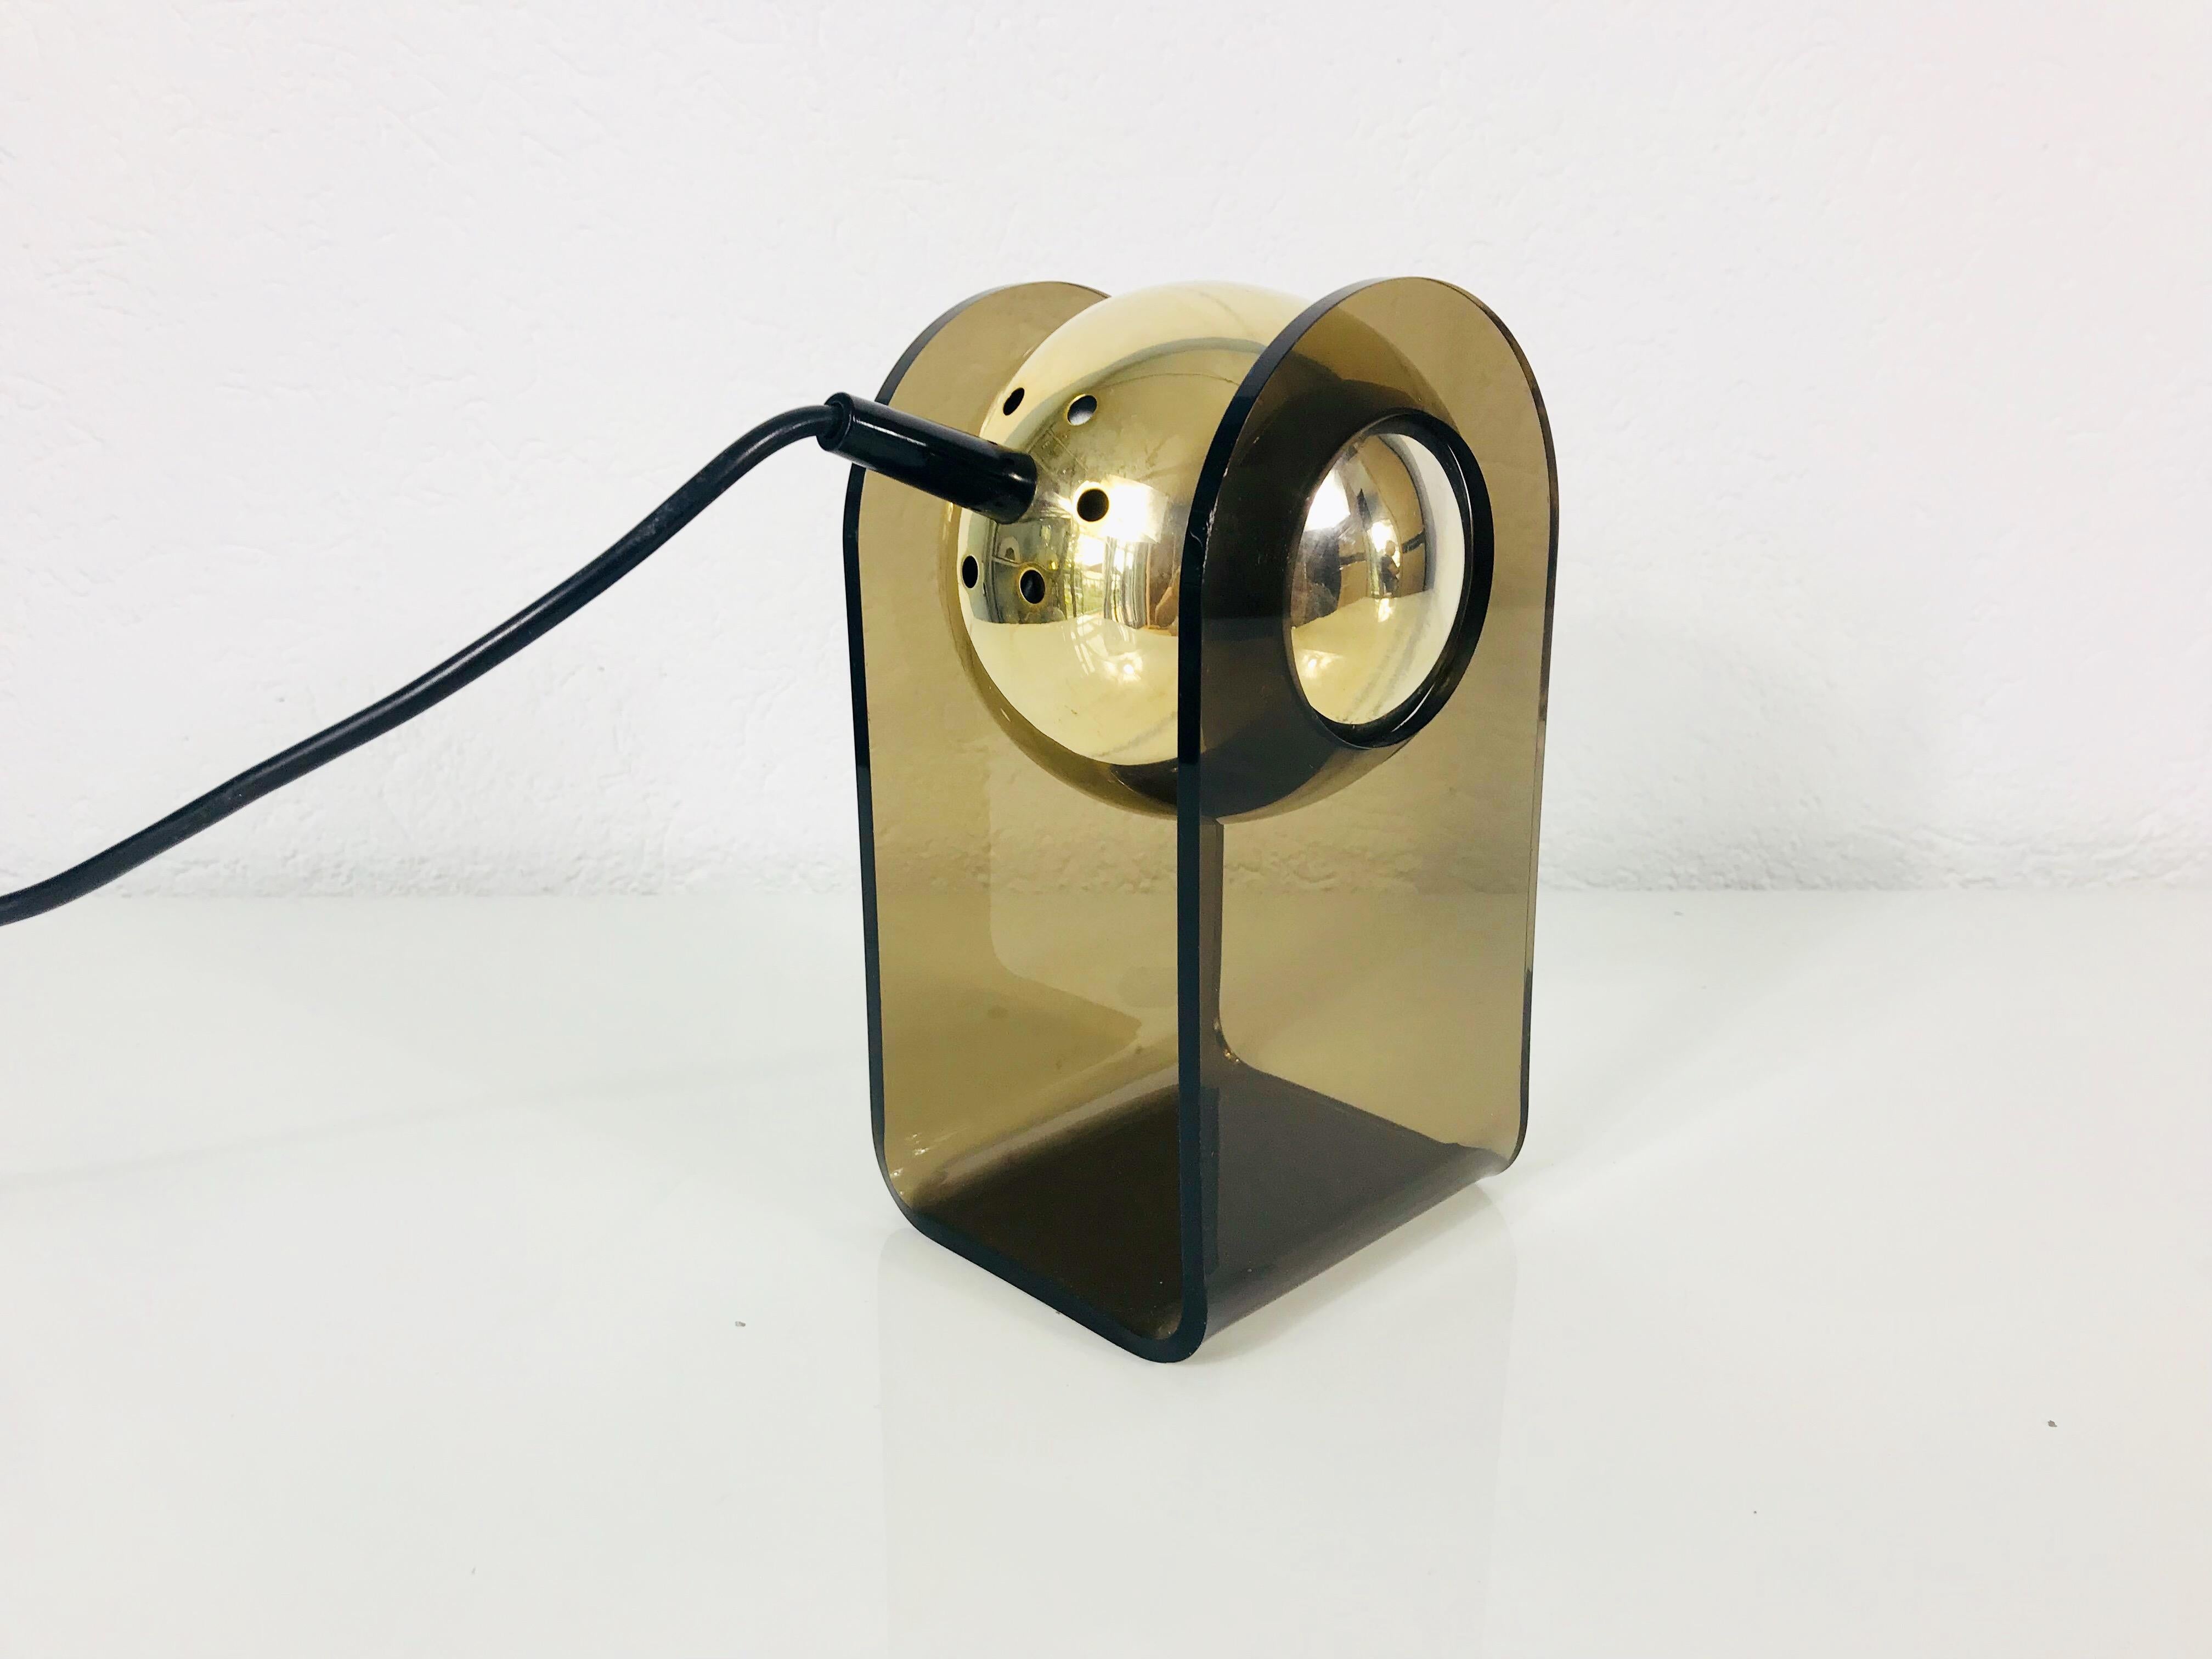 Une belle lampe de table midcentury conçue par Gino Sarfatti pour Arteluce en 1968. Il est fascinant avec sa belle teinte brune et son corps en plexiglas. Les lampes sont en très bon état vintage et fonctionnent parfaitement. La tête de la lampe est